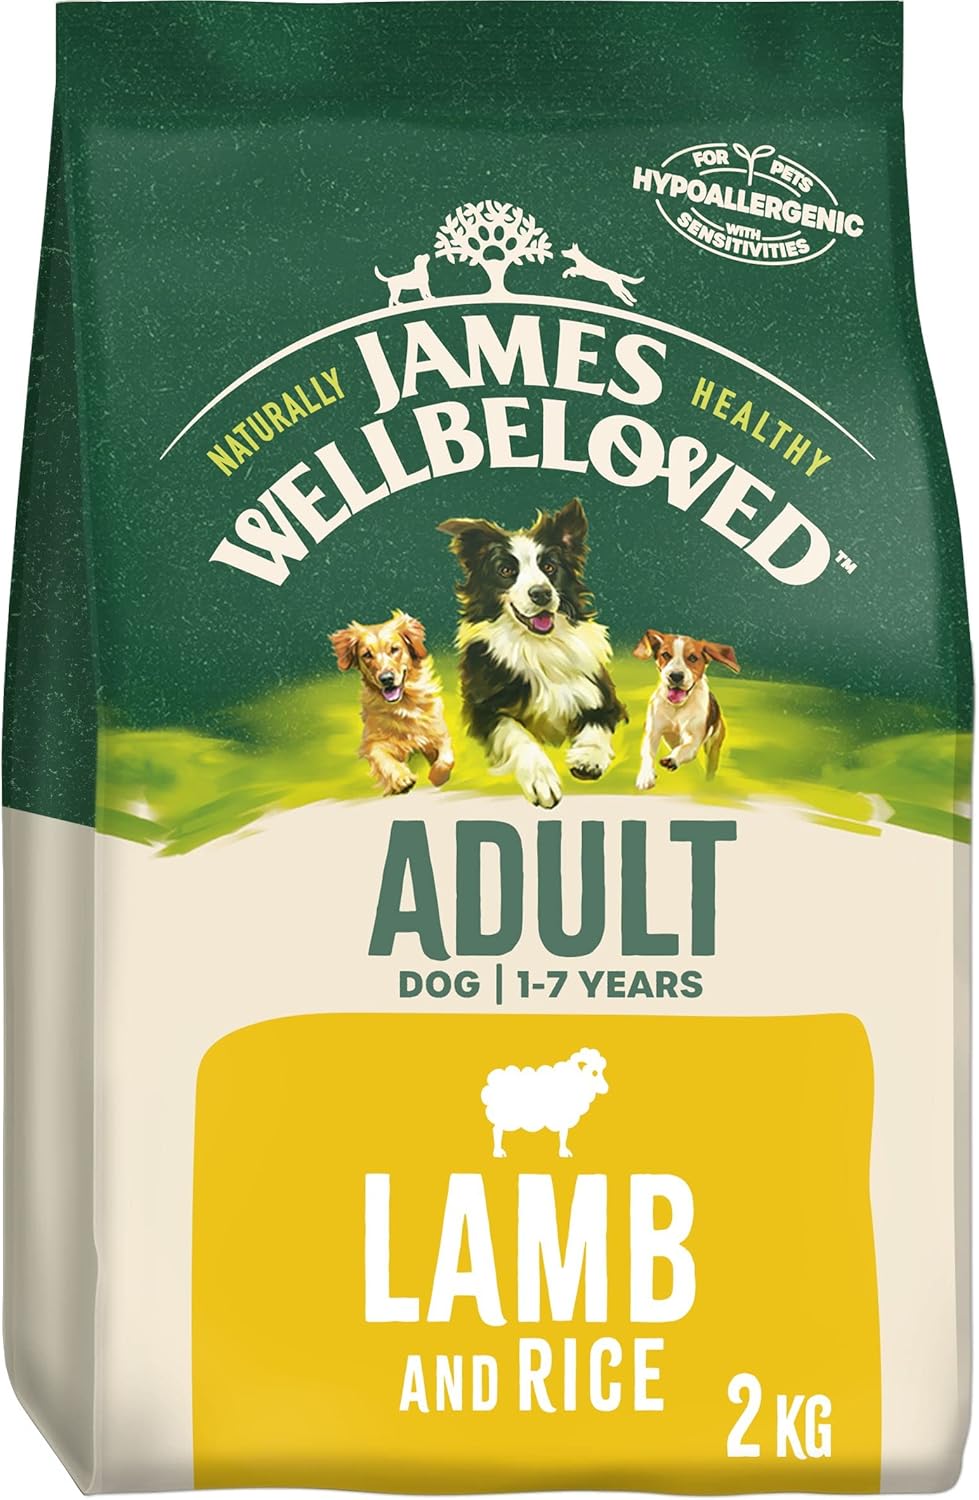 James Wellbeloved Adult Lamb & Rice 2 kg Bag, Hypoallergenic Dry Dog Food?02JAL21